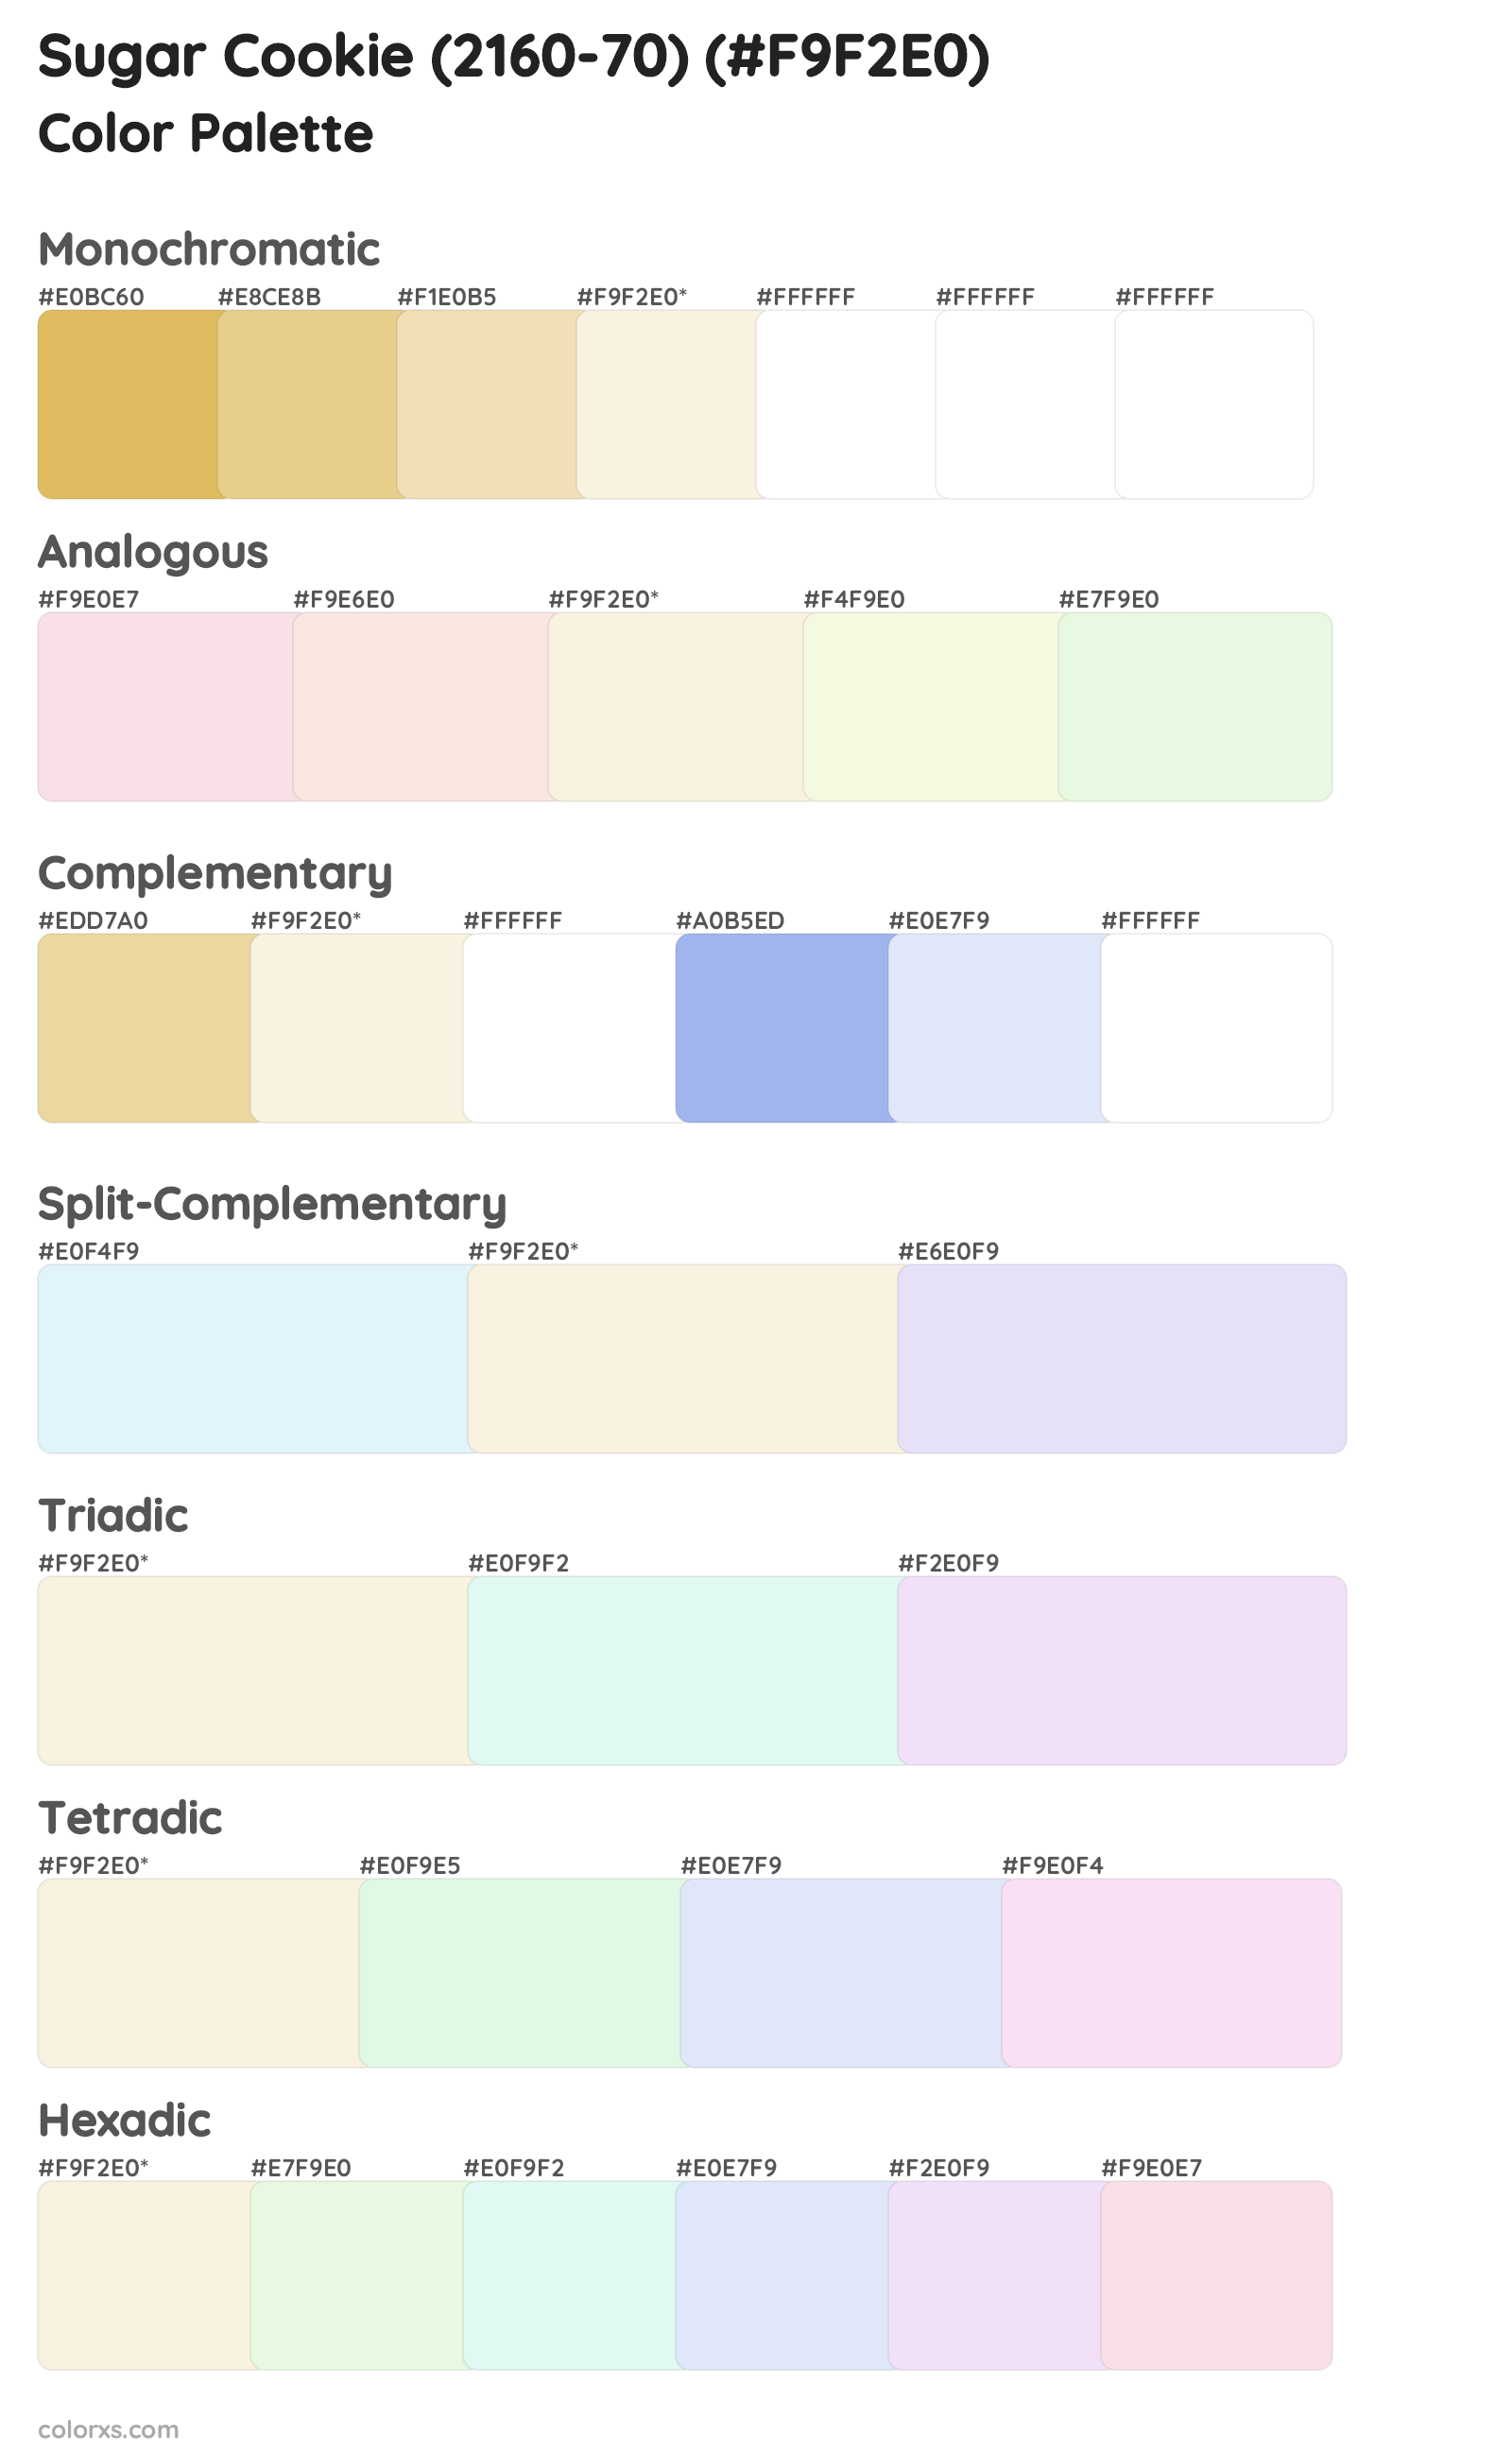 Sugar Cookie (2160-70) Color Scheme Palettes